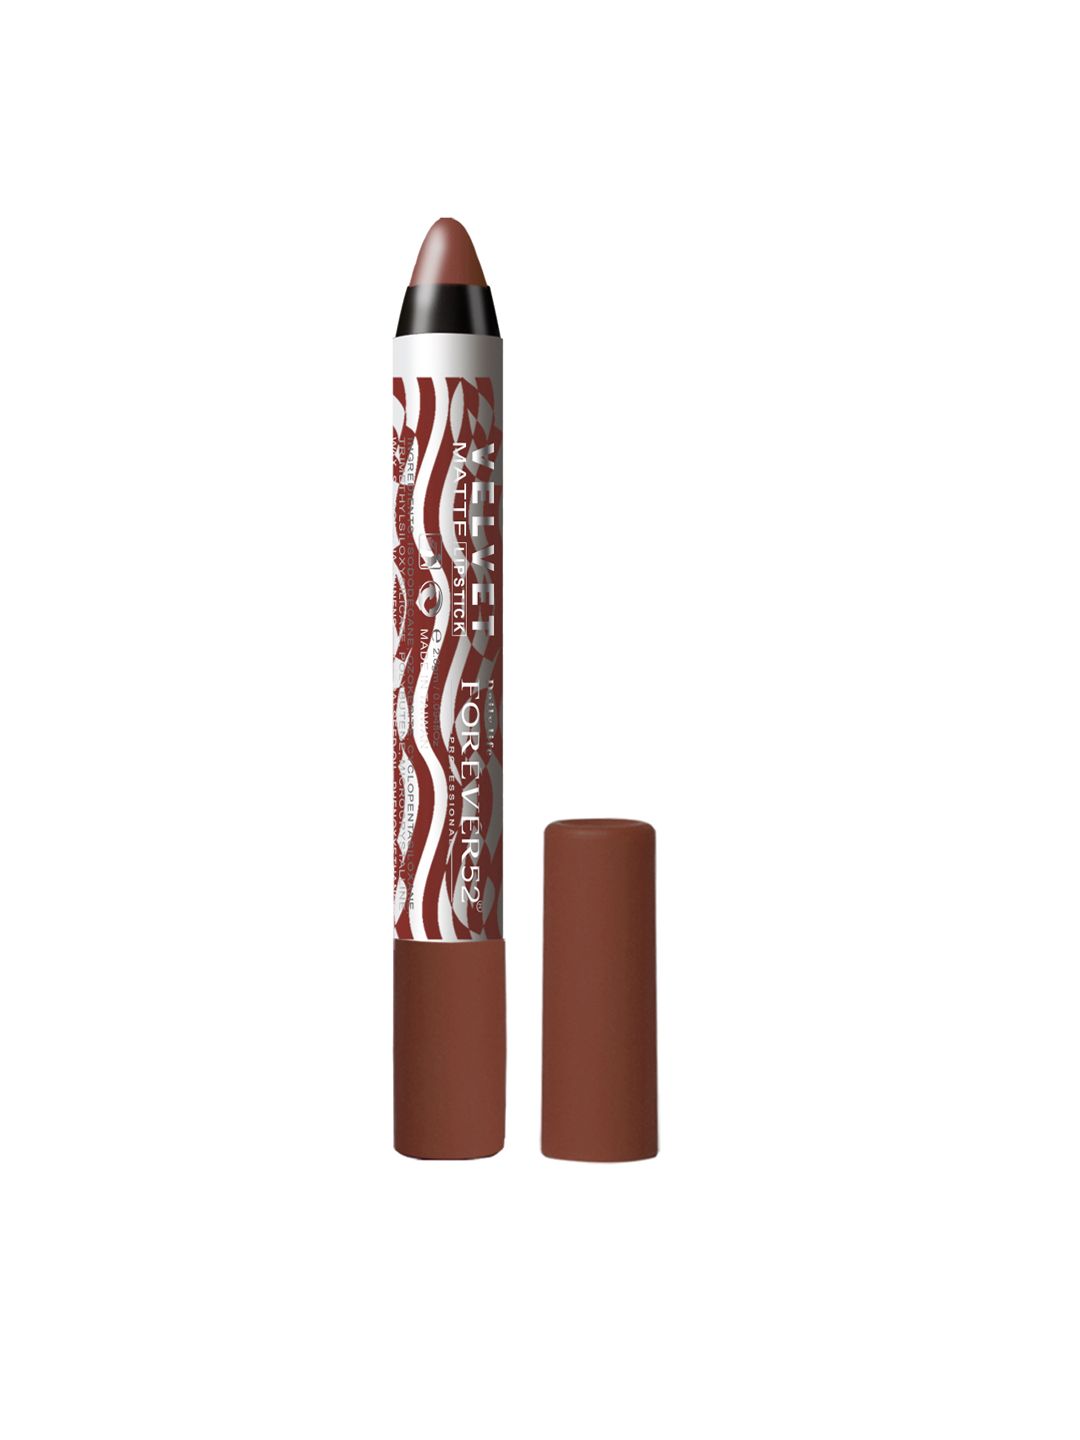 Daily Life Forever52 Brown Velvet Matte Lipstick 2.8g Price in India